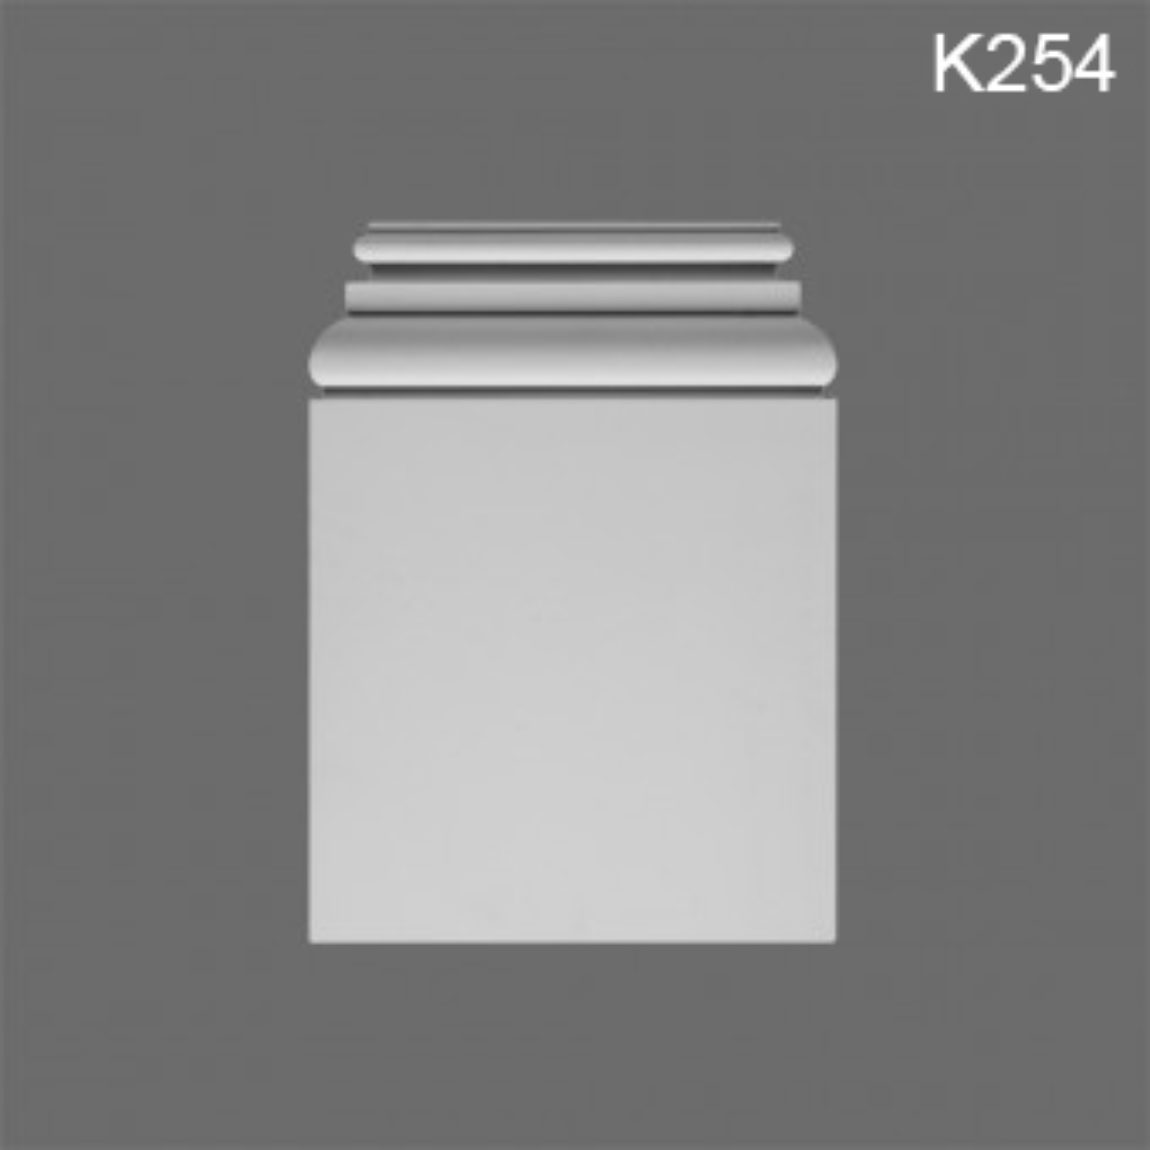 K254